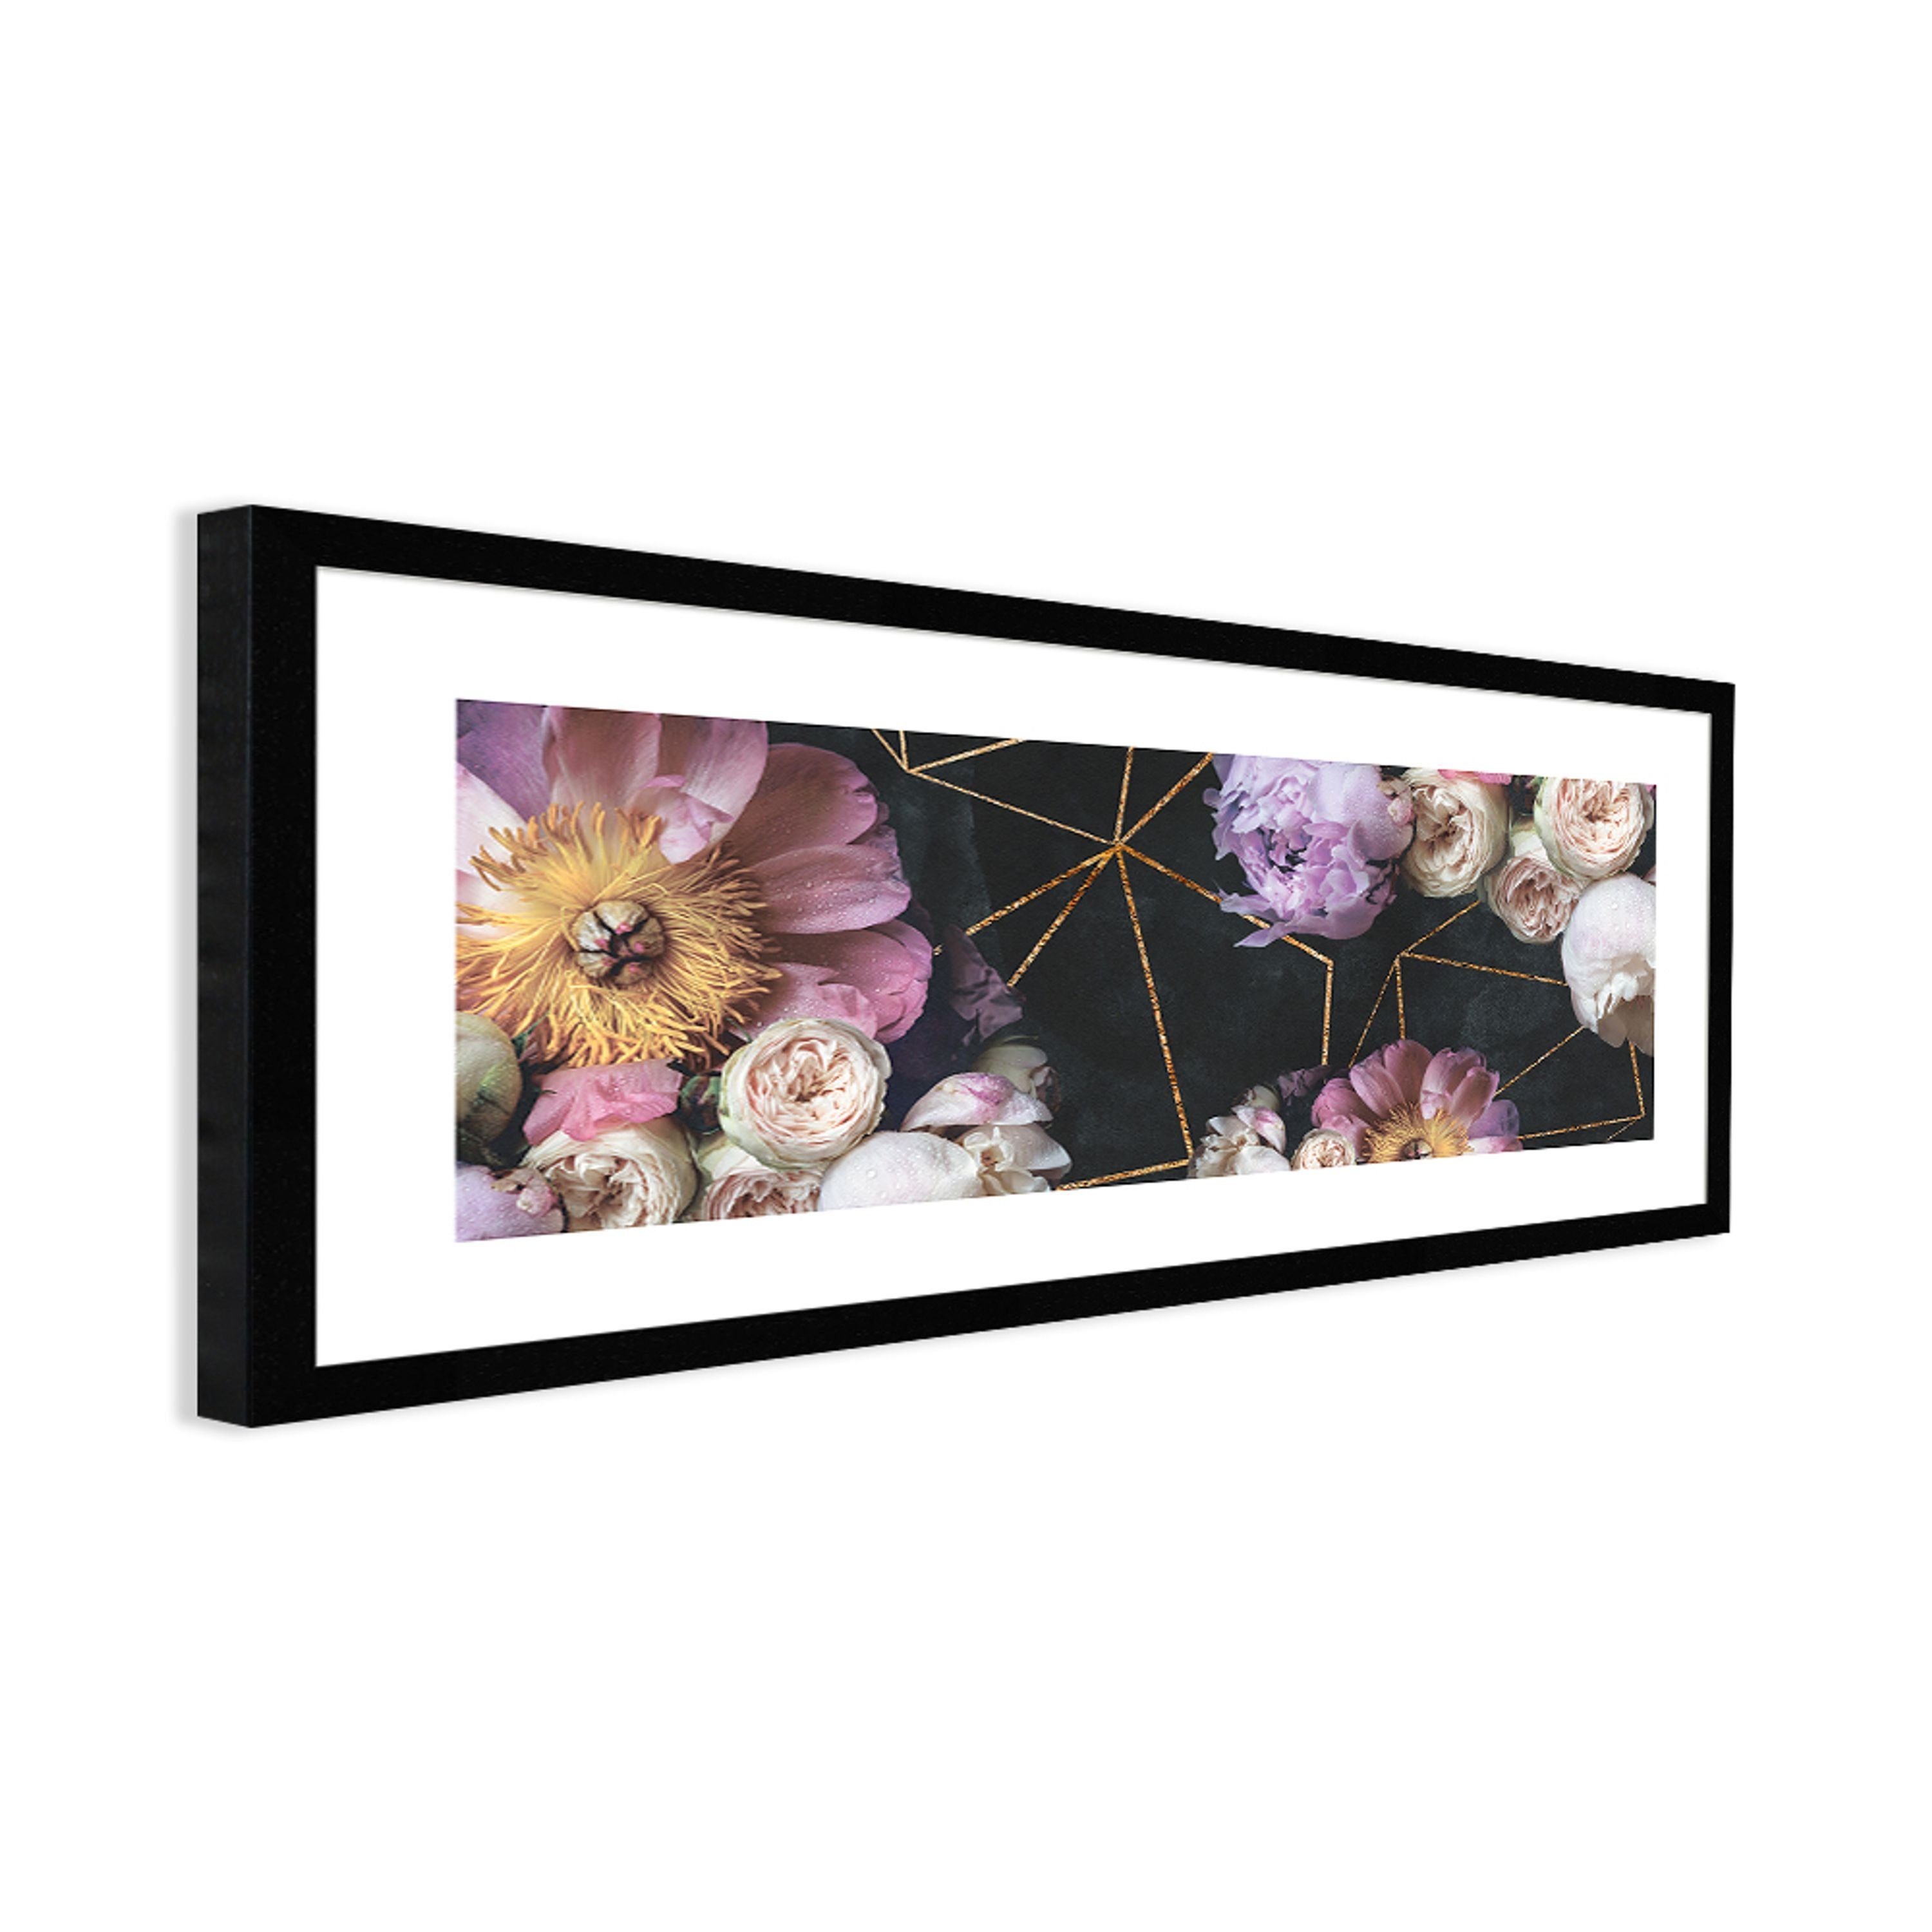 mit 71x30cm artissimo gerahmt Bild schwarz Rahmen Bkumen Bouquet mit länglich Bild und Blüten: Design-Poster Vintage lila, Rahmen